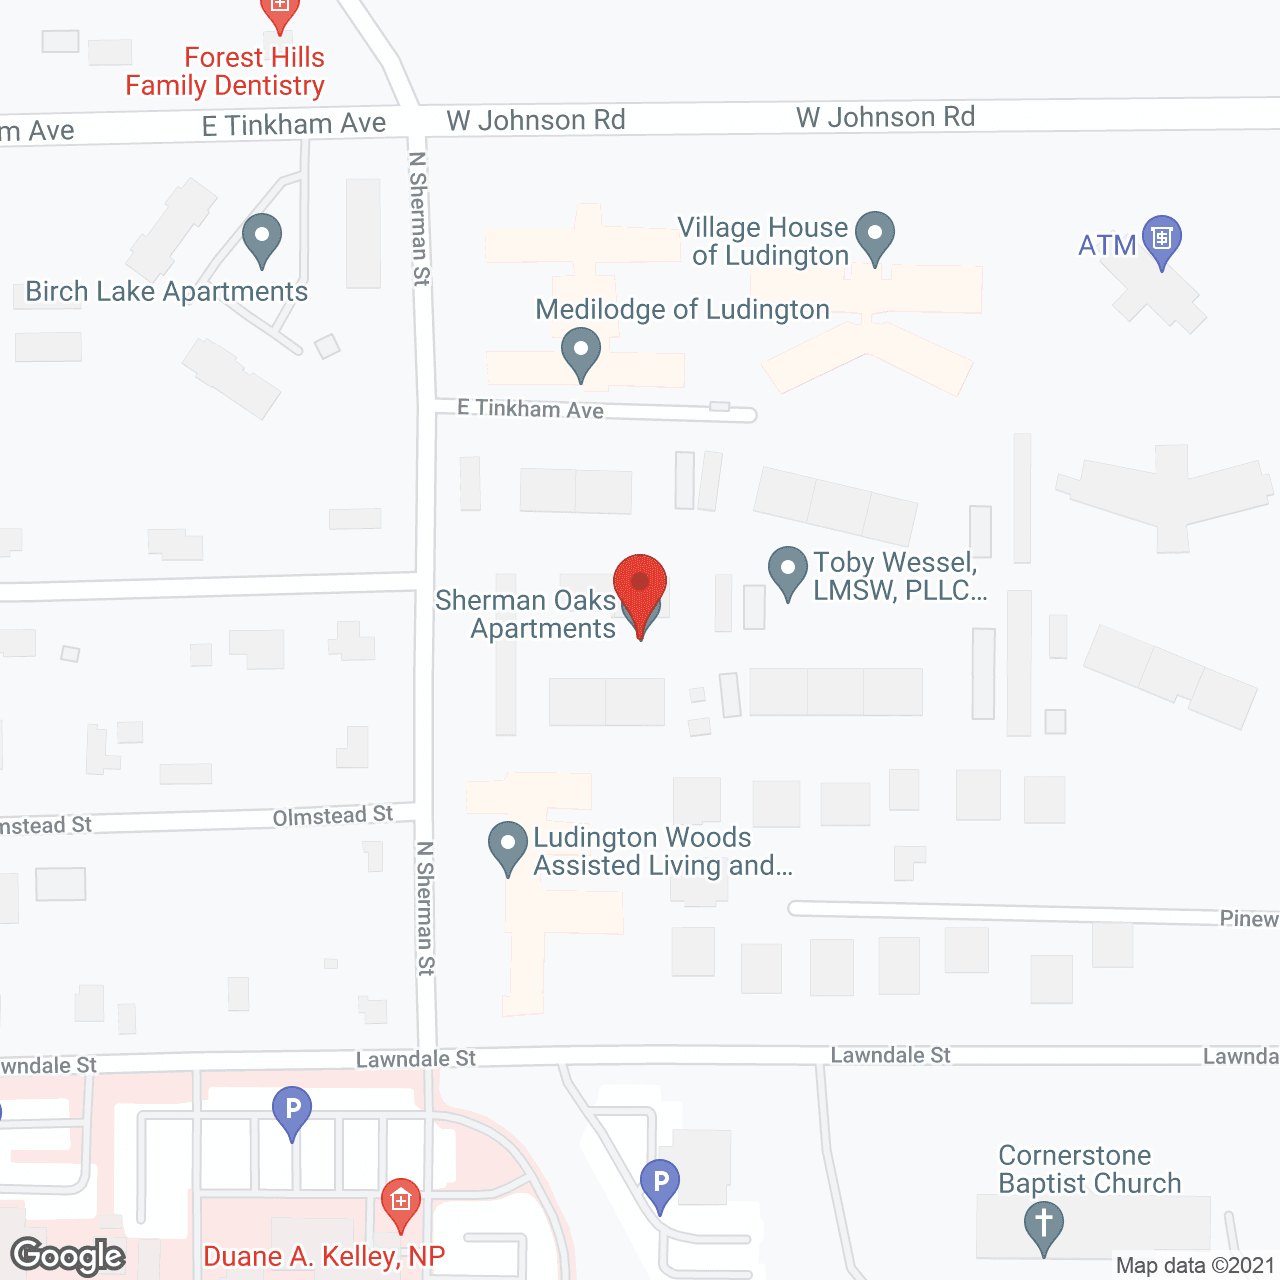 Sherman Oaks Manor in google map